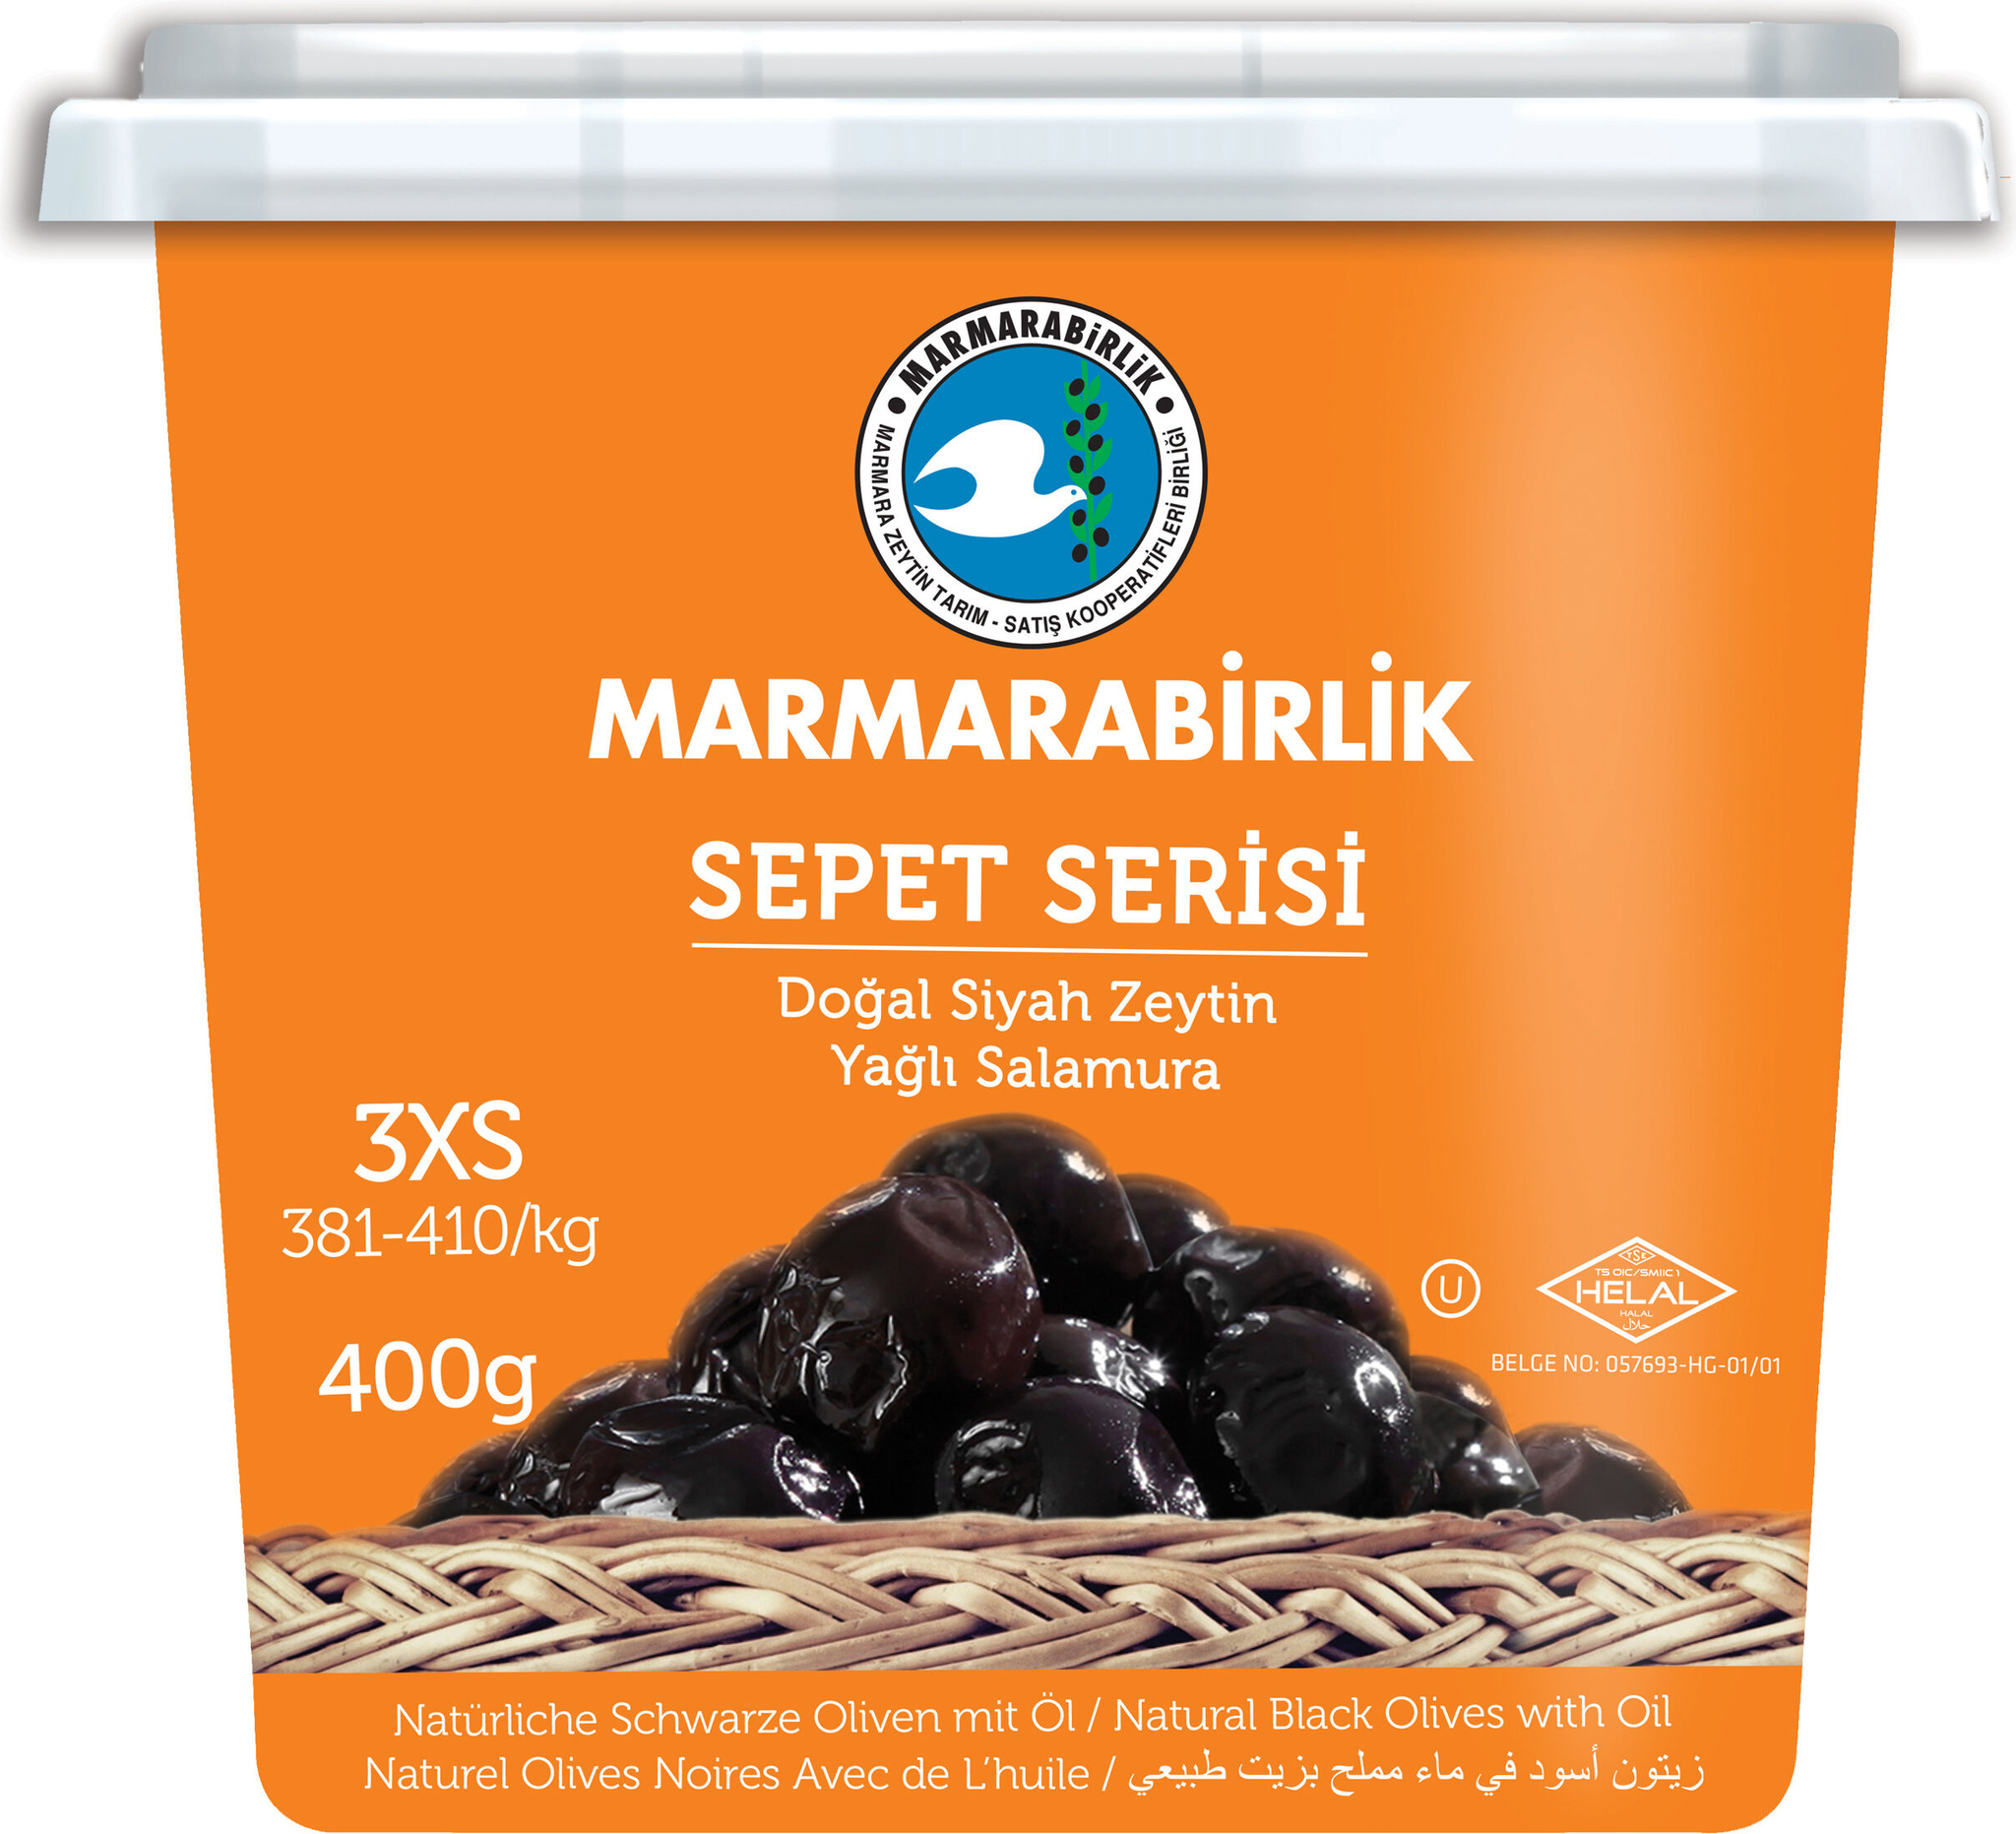 Маслины Marmarabirlik Sepet Serisi 3XS черные вяленые с косточкой, 400 г